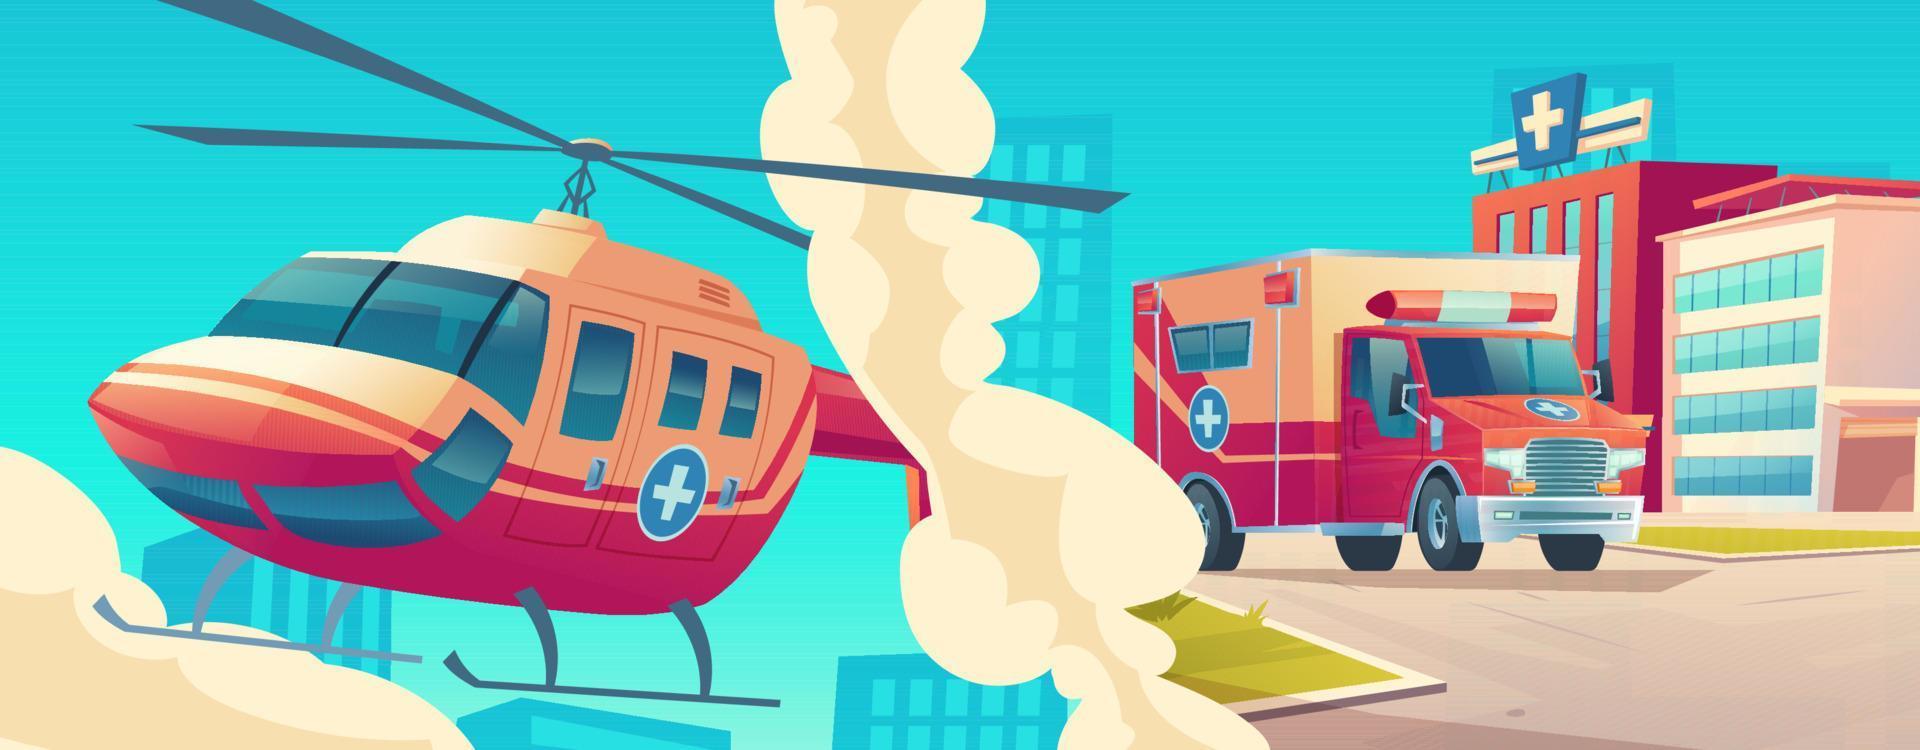 ambulance onderhoud, medisch helikopter en auto vector